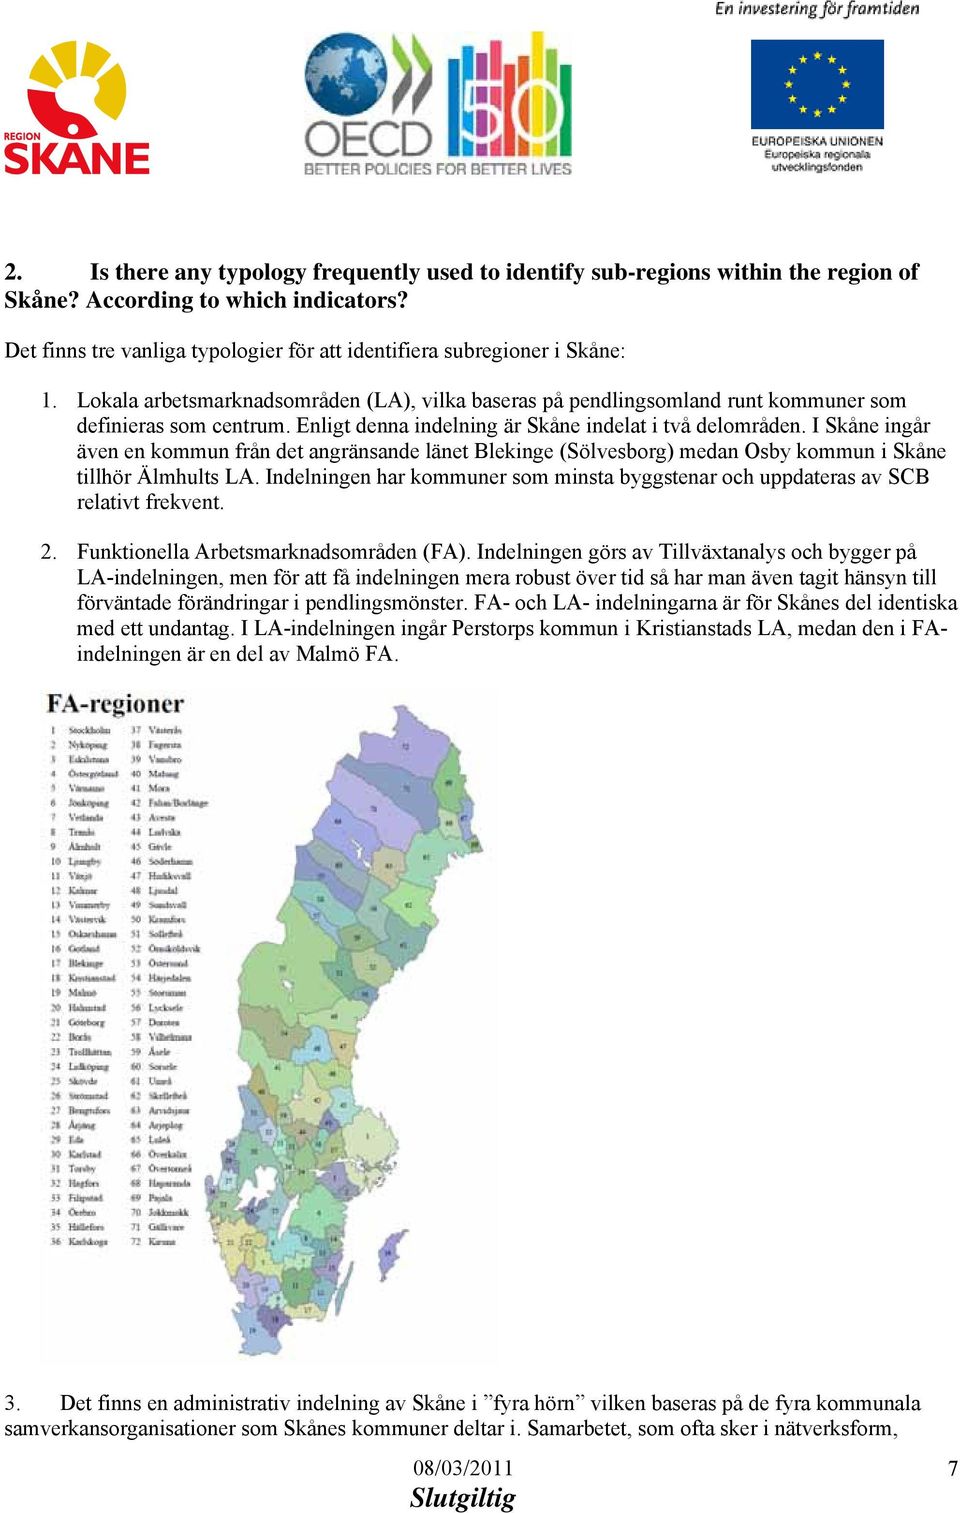 I Skåne ingår även en kommun från det angränsande länet Blekinge (Sölvesborg) medan Osby kommun i Skåne tillhör Älmhults LA.